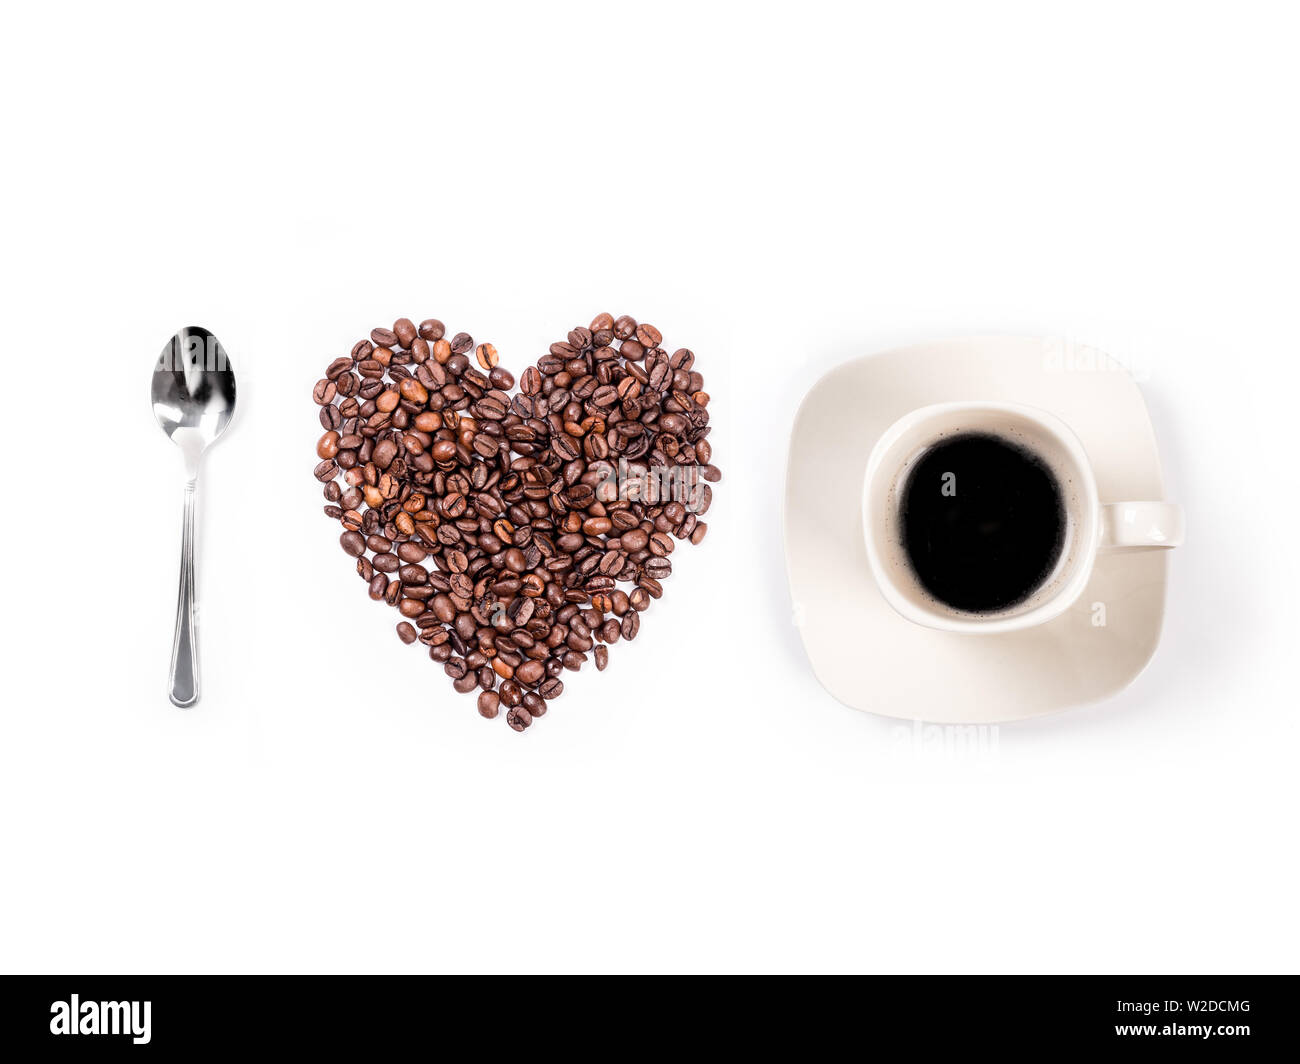 Kaffee Löffel, Herzform aus Kaffeebohnen und Tasse mit schwarzem Kaffee auf weißem Hintergrund angeordnet - Ich liebe Kaffee Konzept Stockfoto